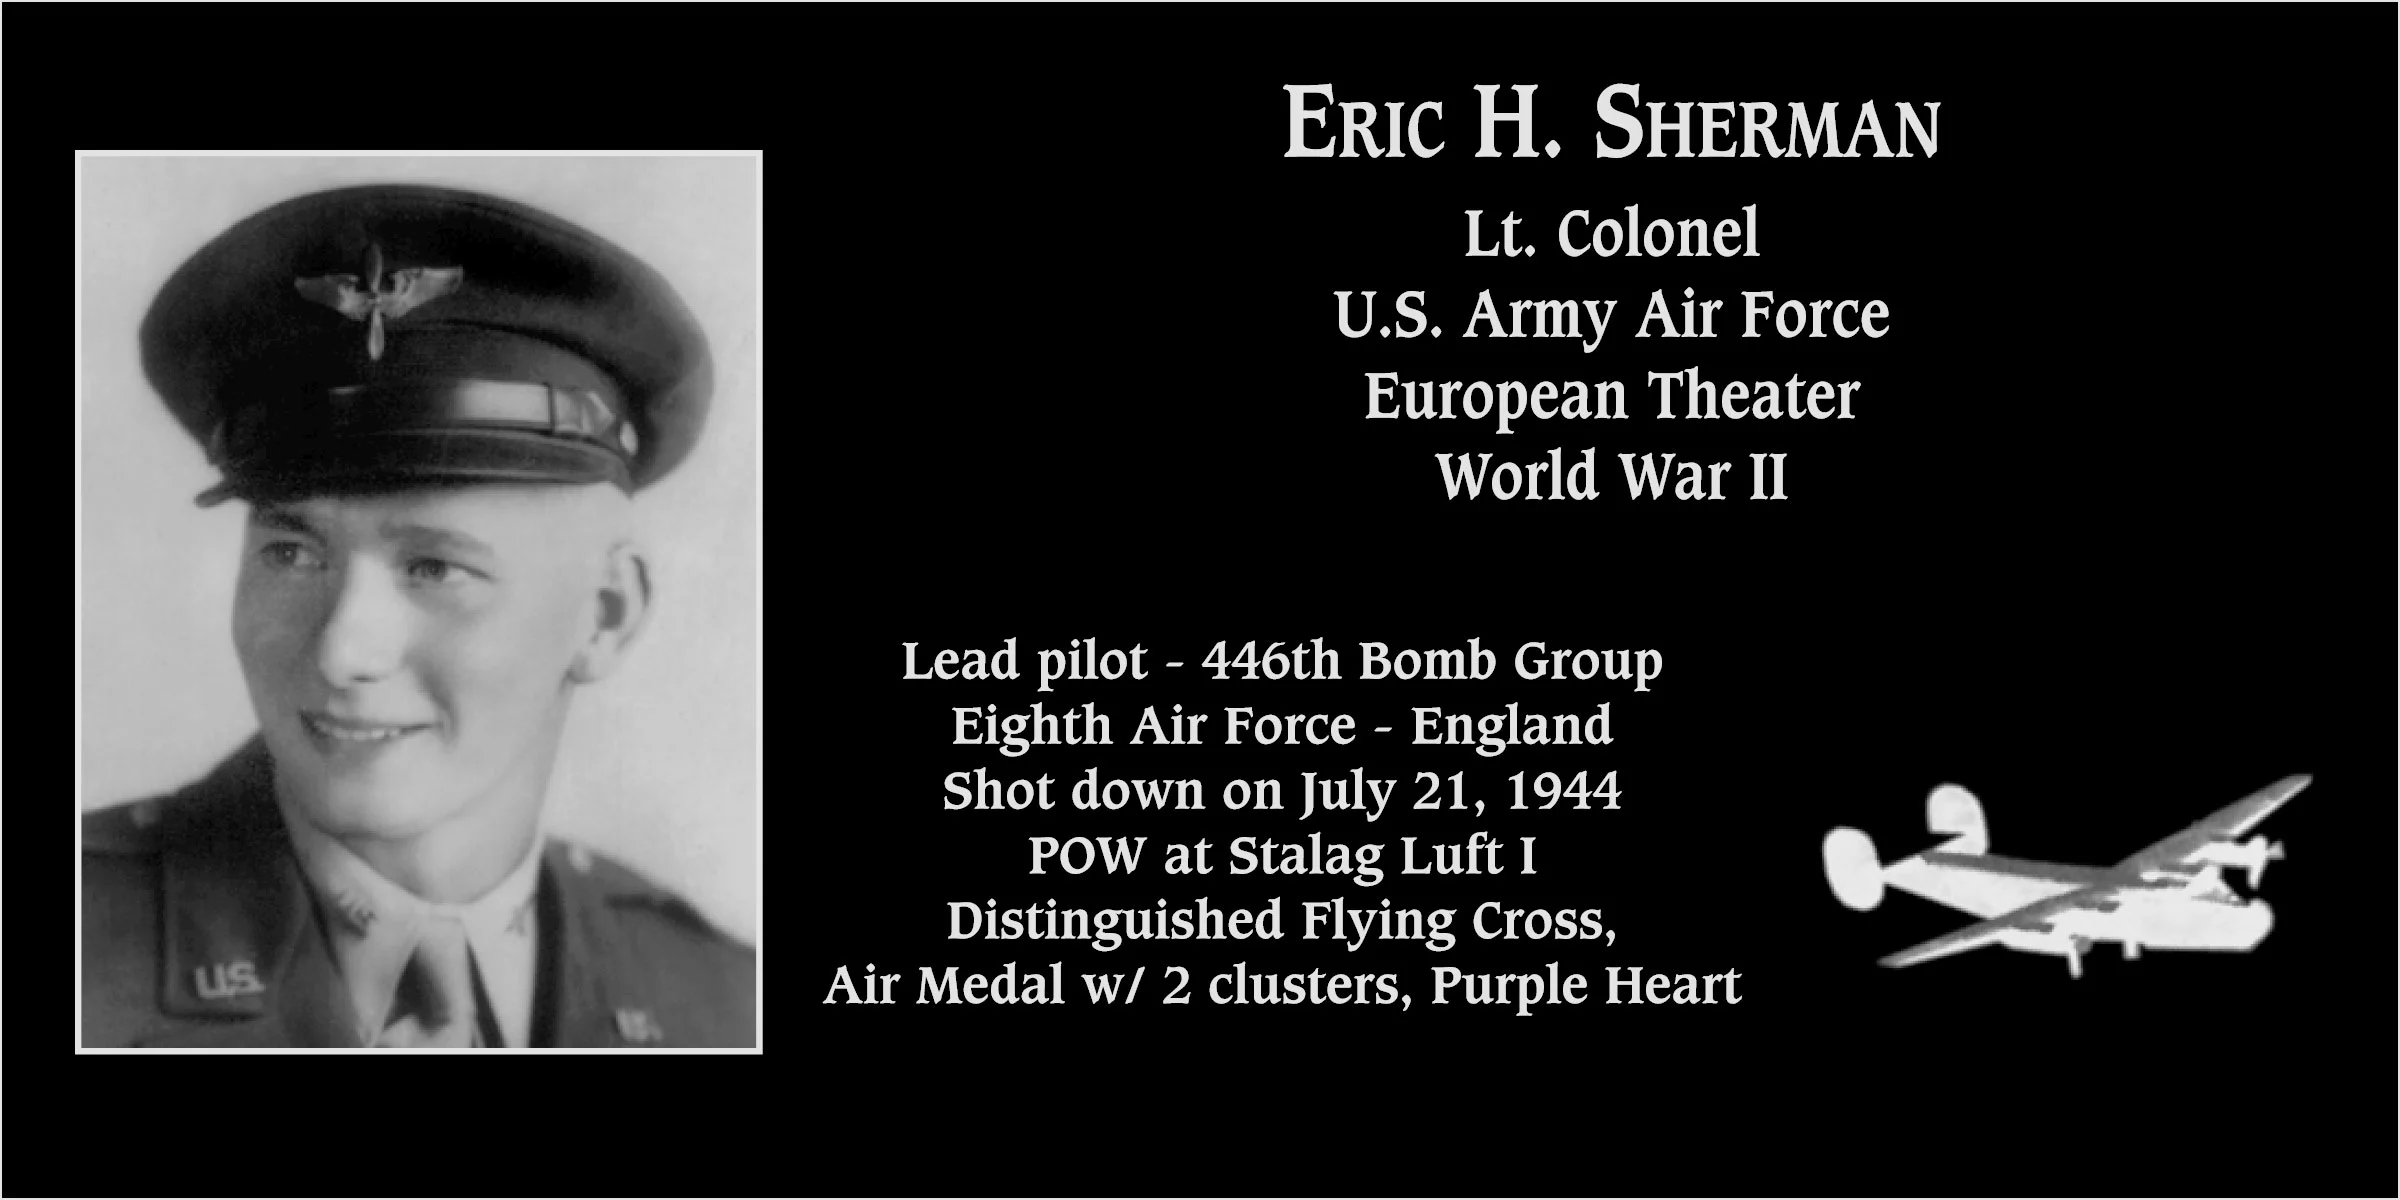 Eric H. Sherman